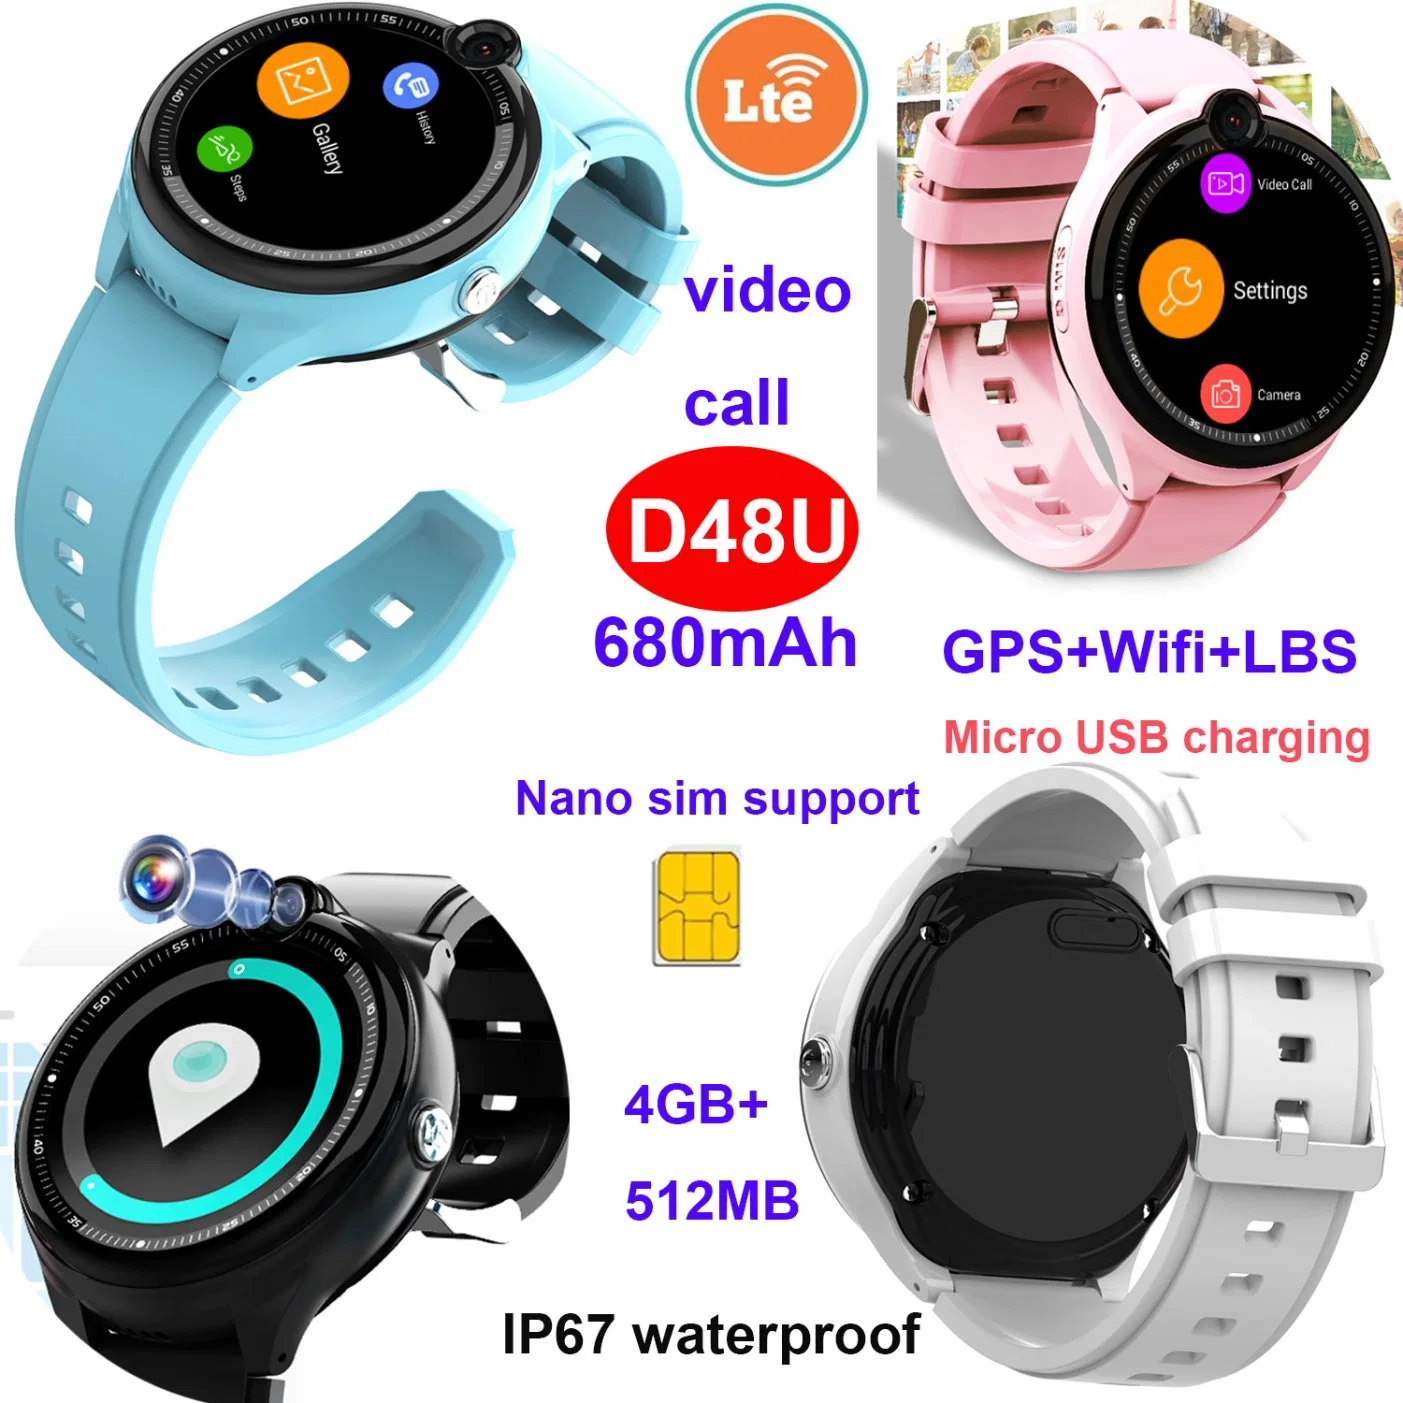 Новый водонепроницаемый носитель с поддержкой 4G LTE IP67 Micro USB Safe SOS Video Вызовите Smart Watch Tracker GPS с отслеживанием истории фитнеса D48U